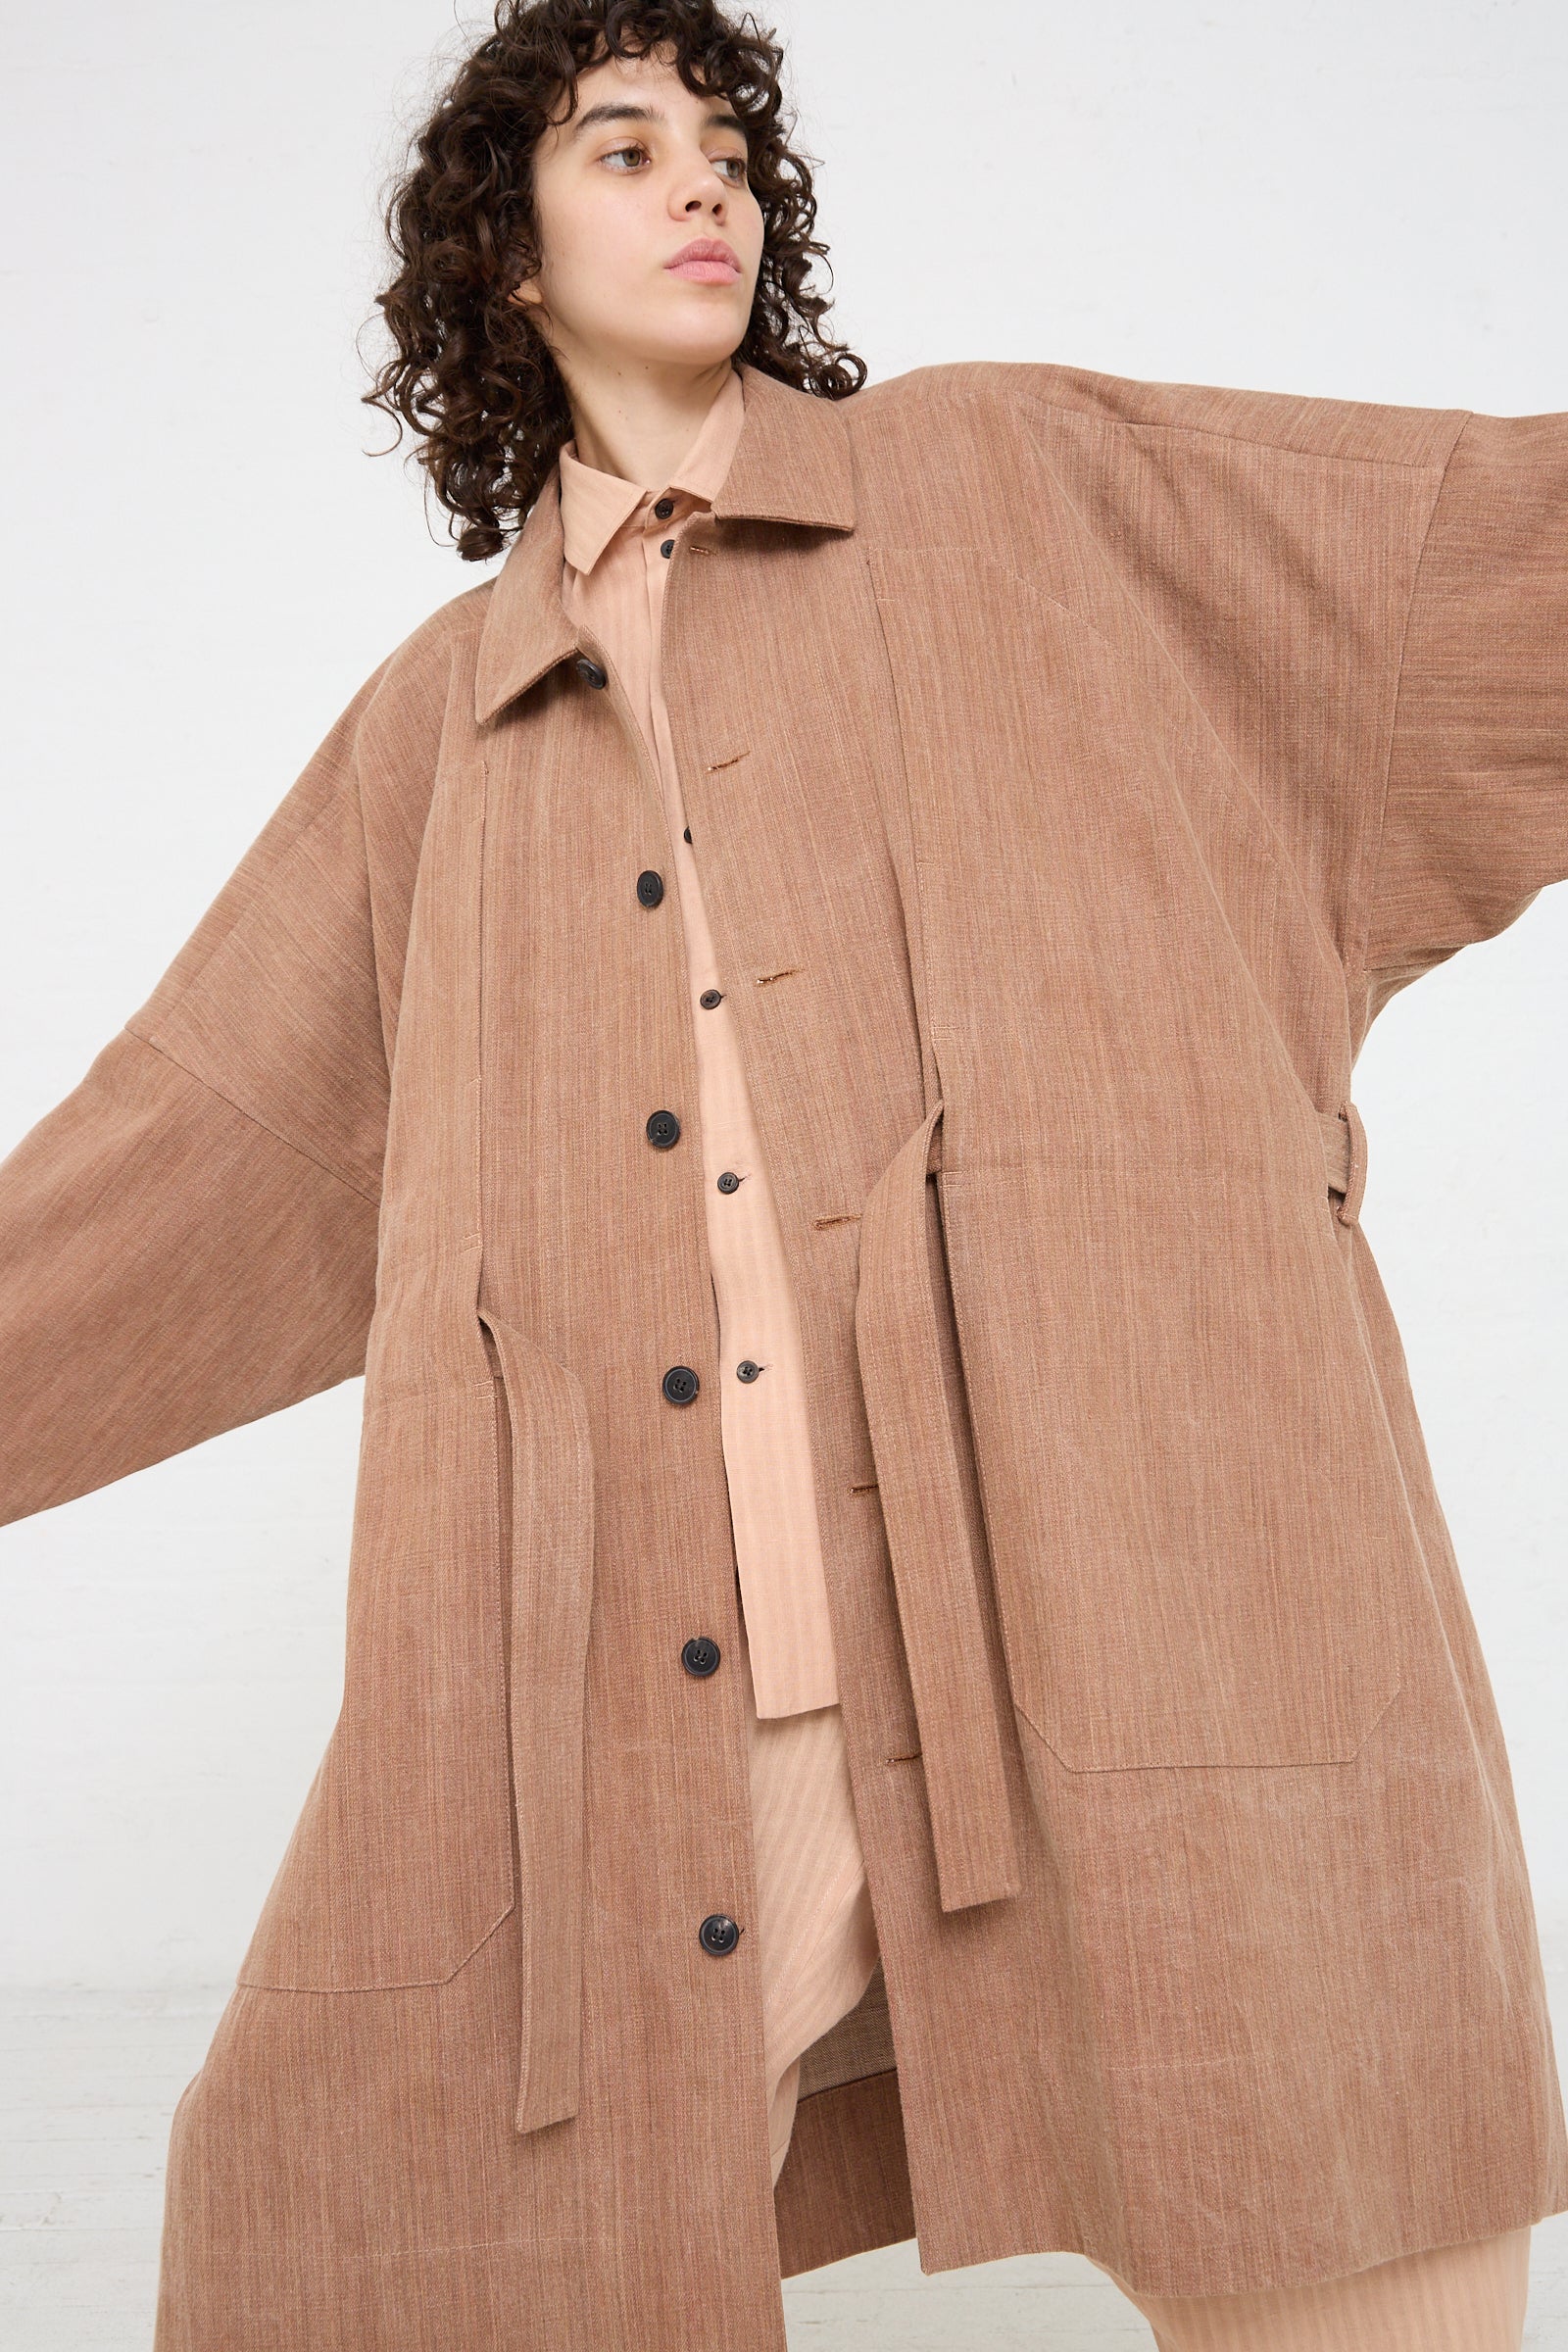 The model is wearing a Jan-Jan Van Essche Woven Cotton Long Coat in Kakishibu with a self tie belt.